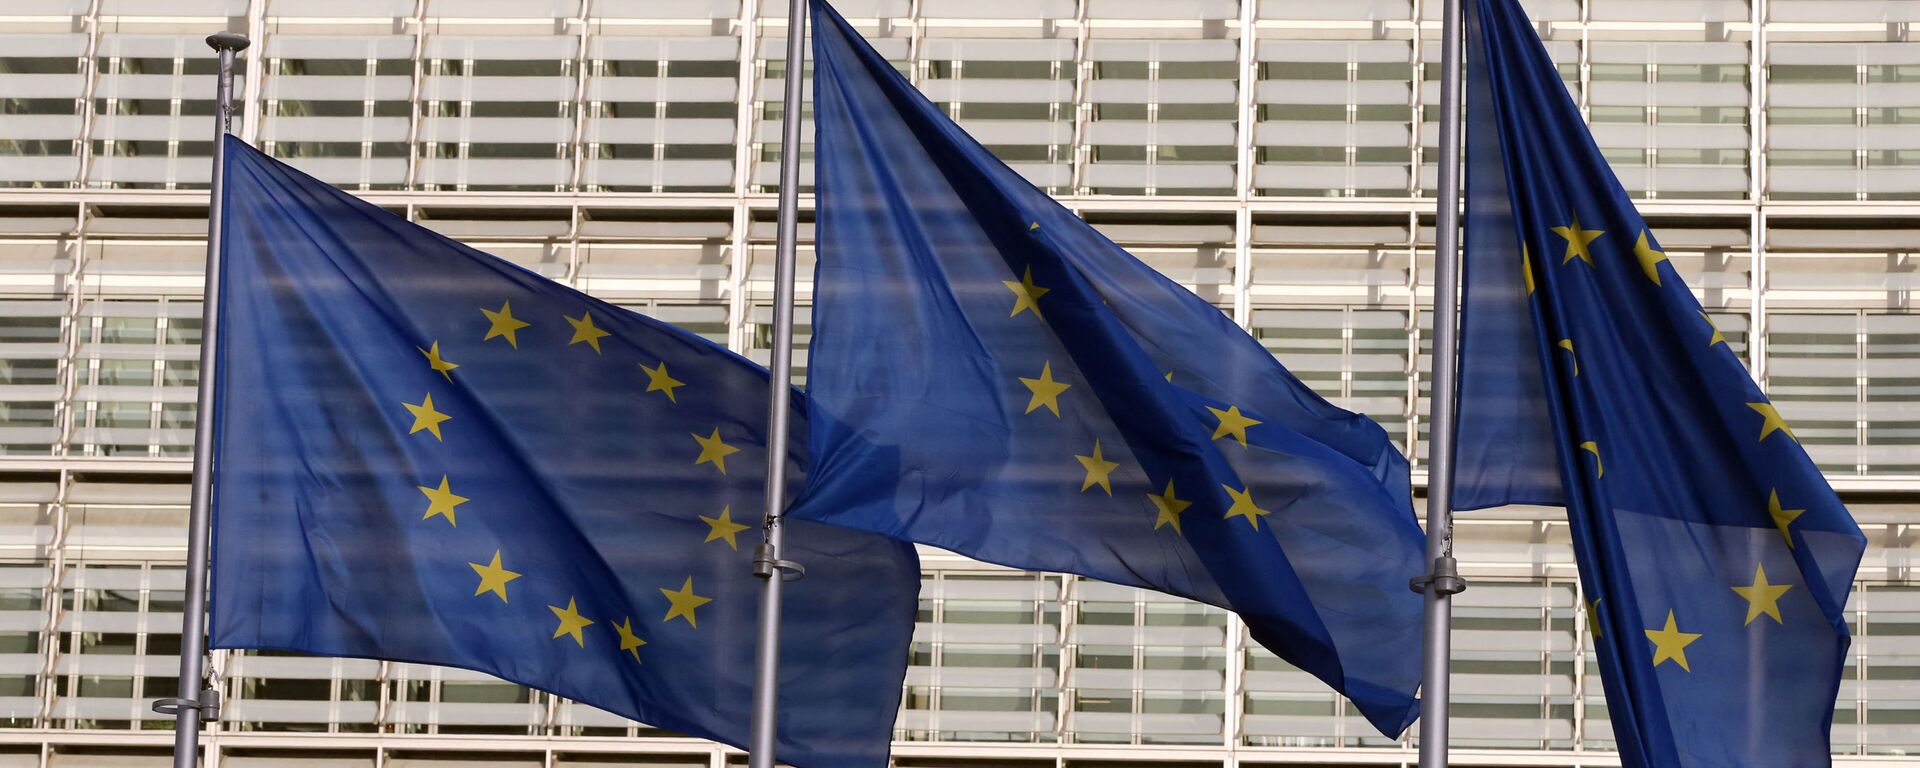 Europos Sąjungos vėliavos prie Europos Komisijos būstinės Briuselyje, archyvinė nuotrauka - Sputnik Lietuva, 1920, 13.04.2021